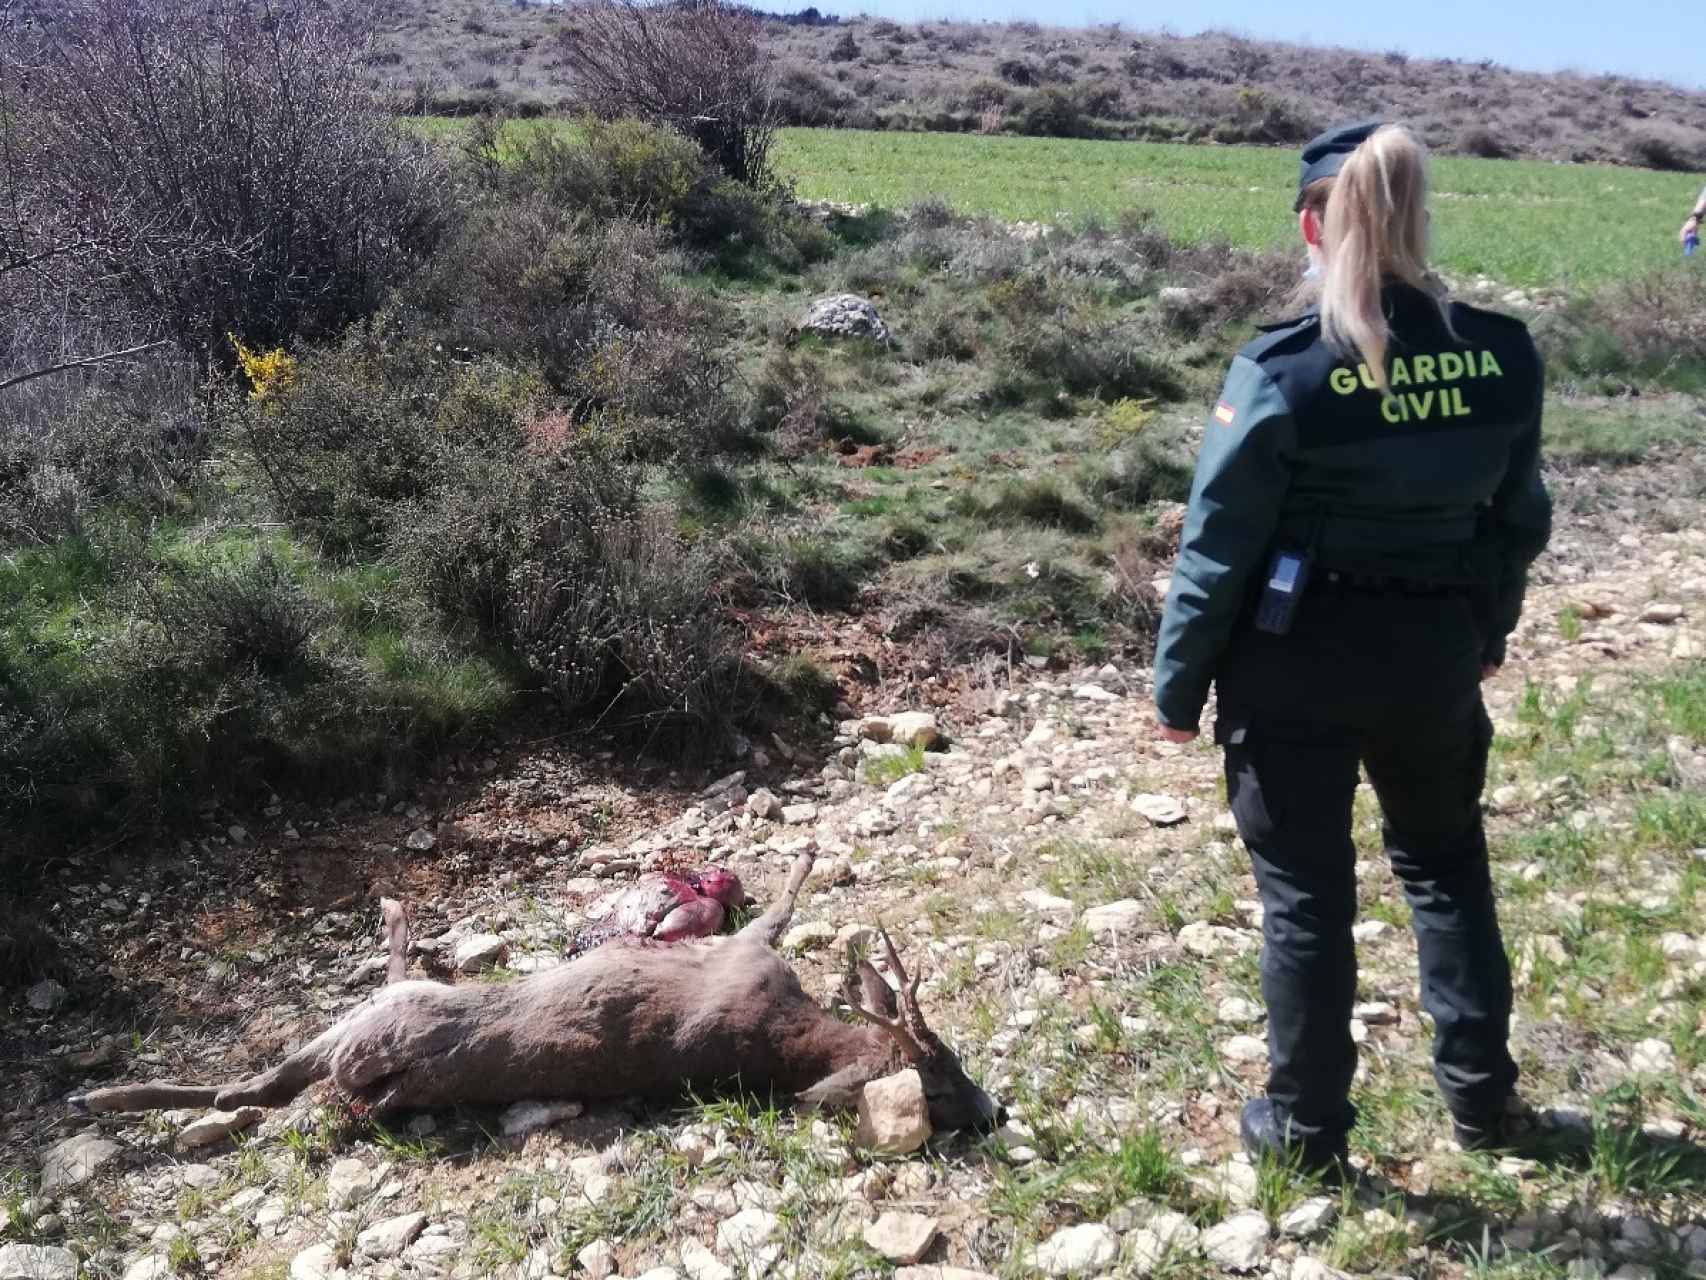 Imagen de uno de los corzos cazado furtivamente en Soria facilitada por la Guardia Civil.